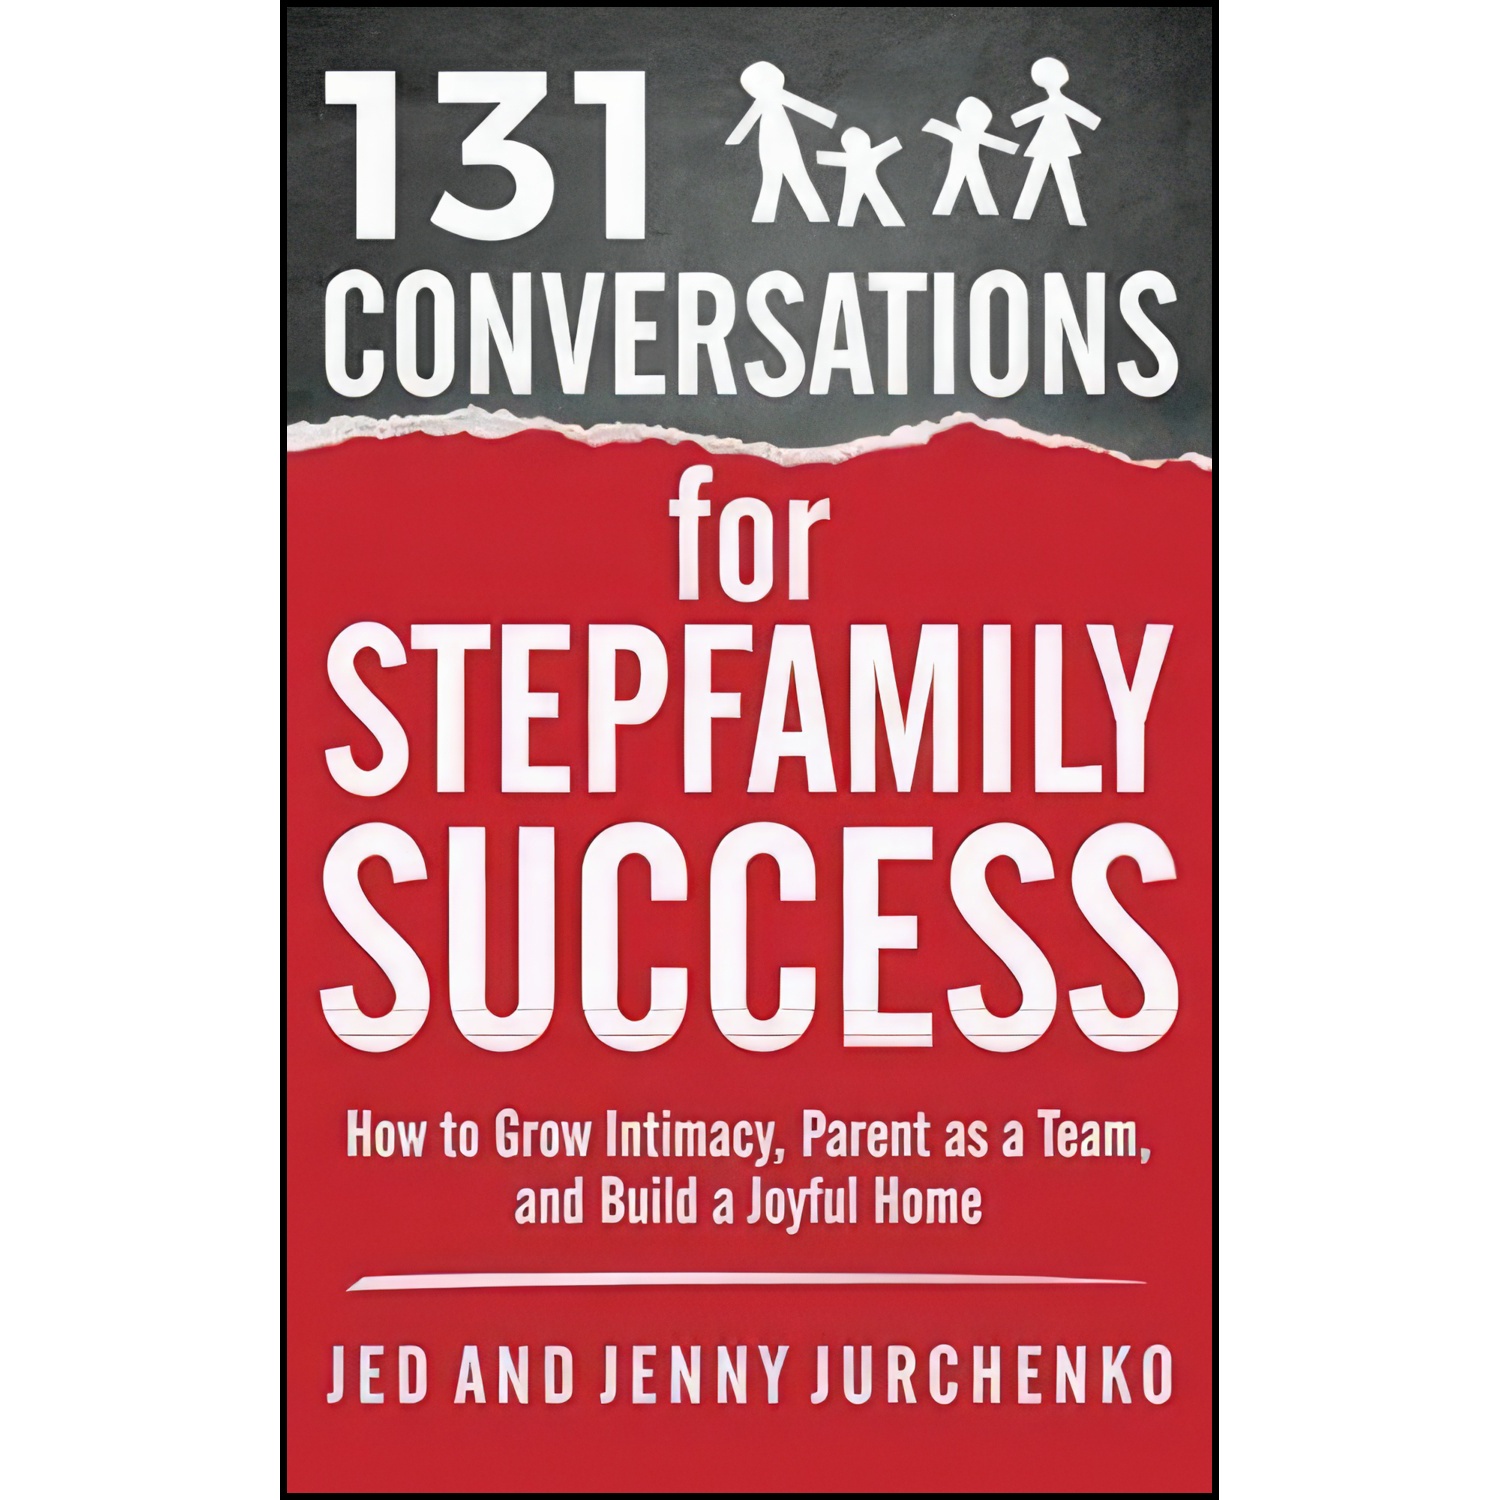 کتاب 131 Conversations for Stepfamily Success اثر Jed Jurchenko and Jenny Jurchenko انتشارات تازه ها